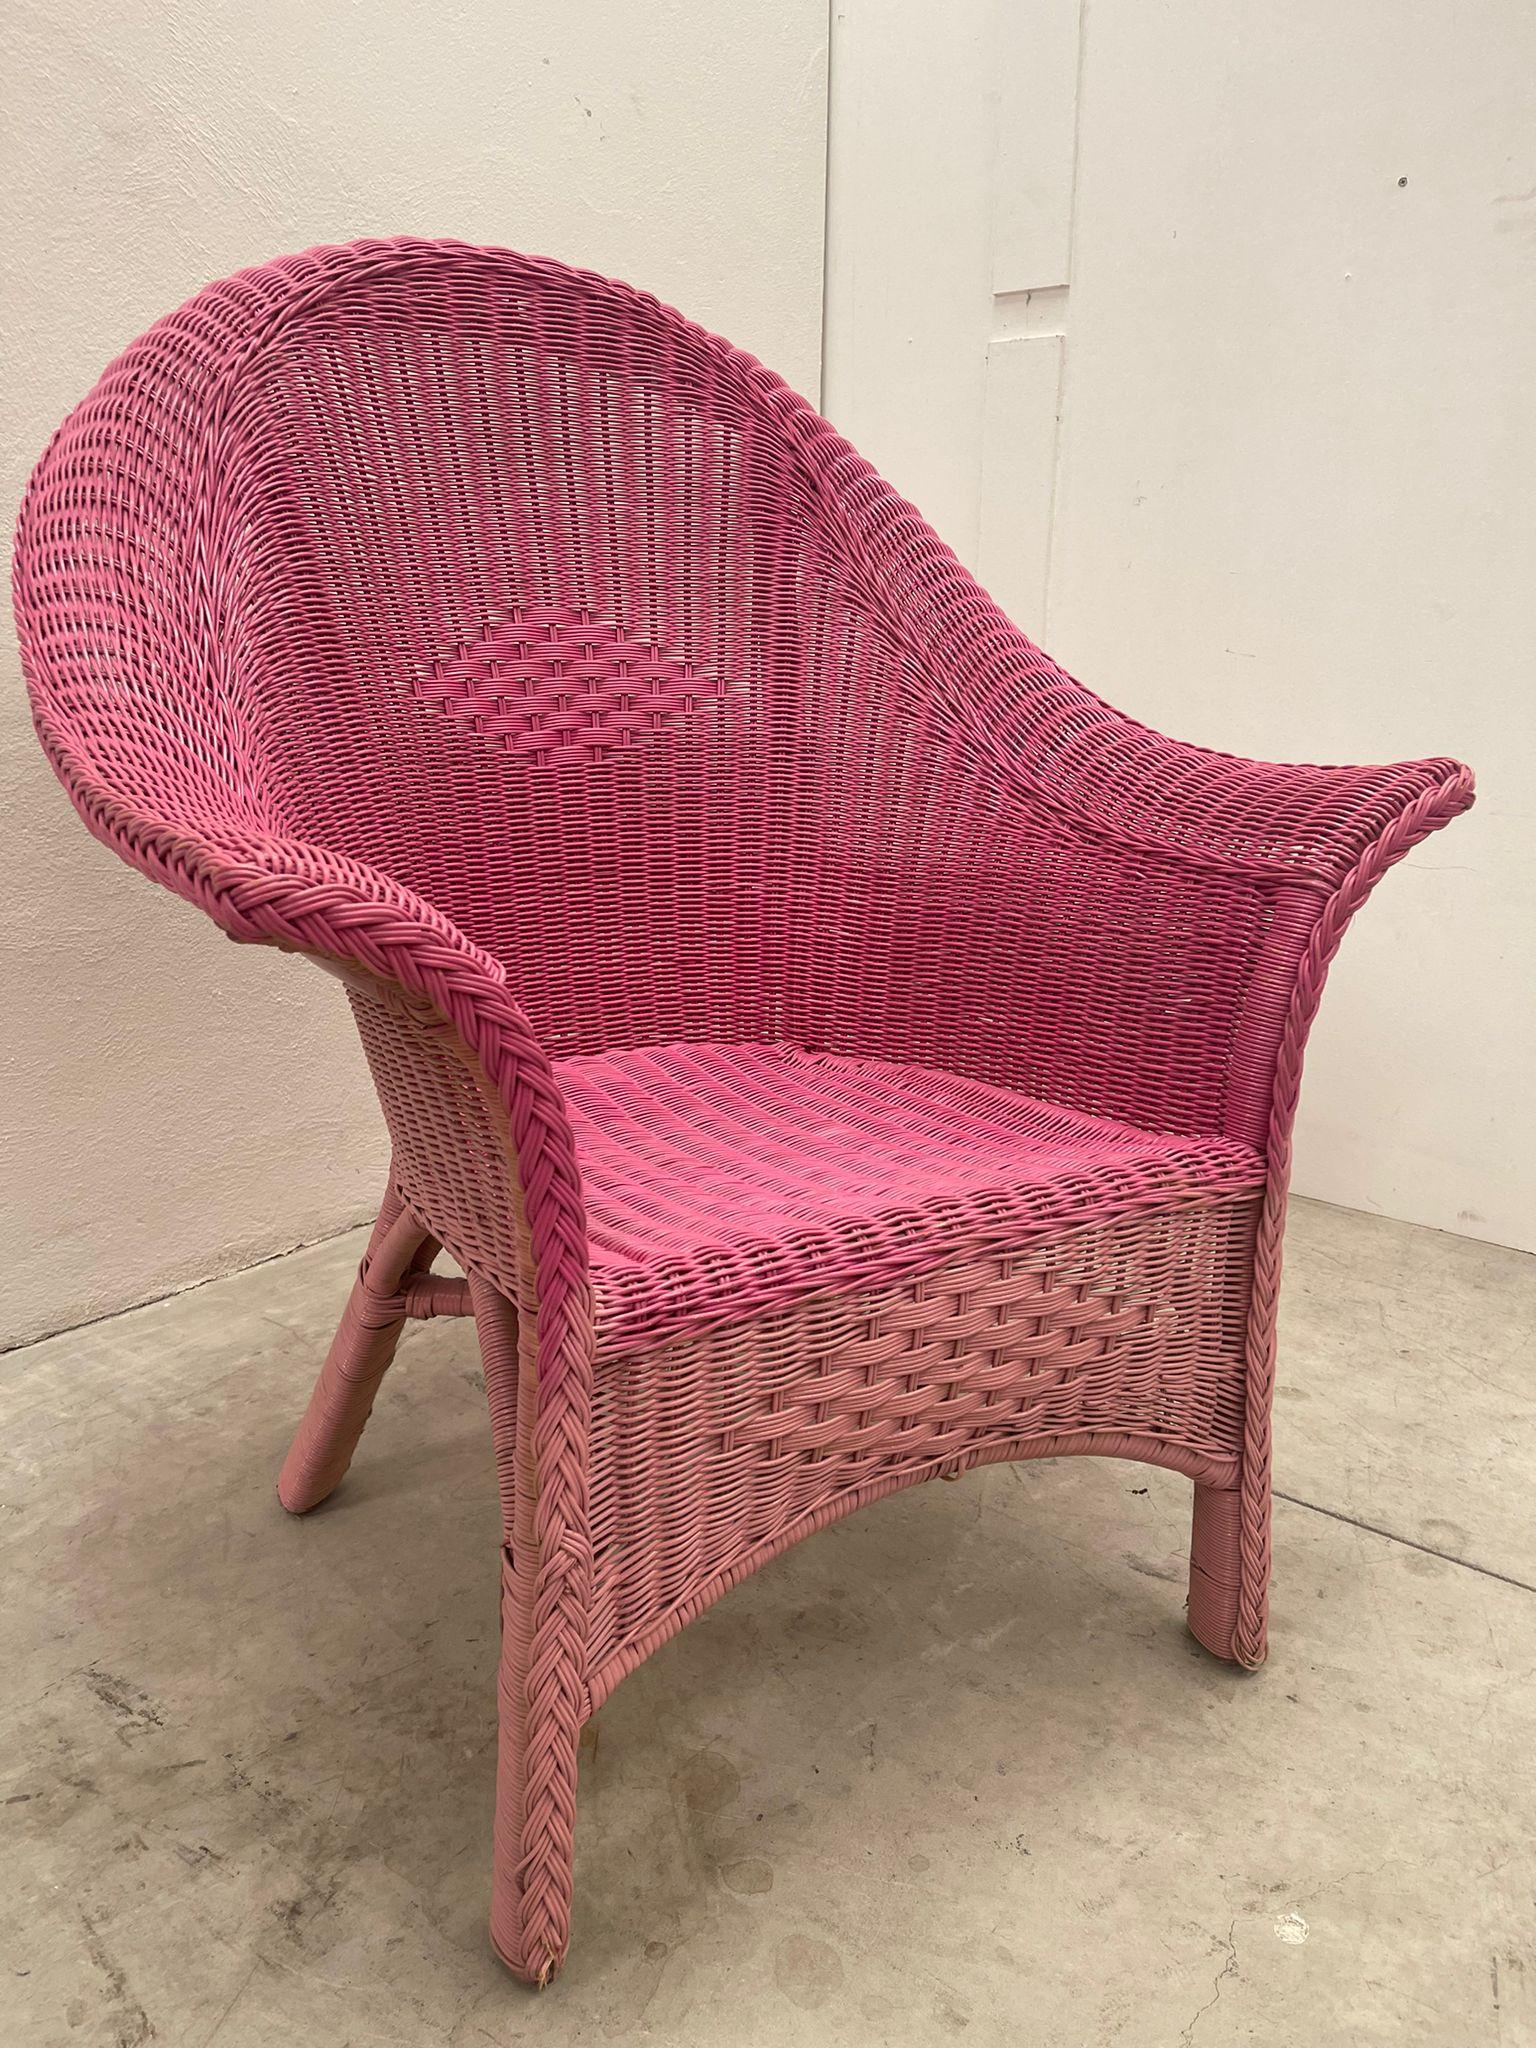 Prestigeträchtiger Outdoor-Stuhl, ideal, um Ihrem Garten einen Hauch von Farbe zu verleihen. 

Artikel wie neu, keine Probleme. 